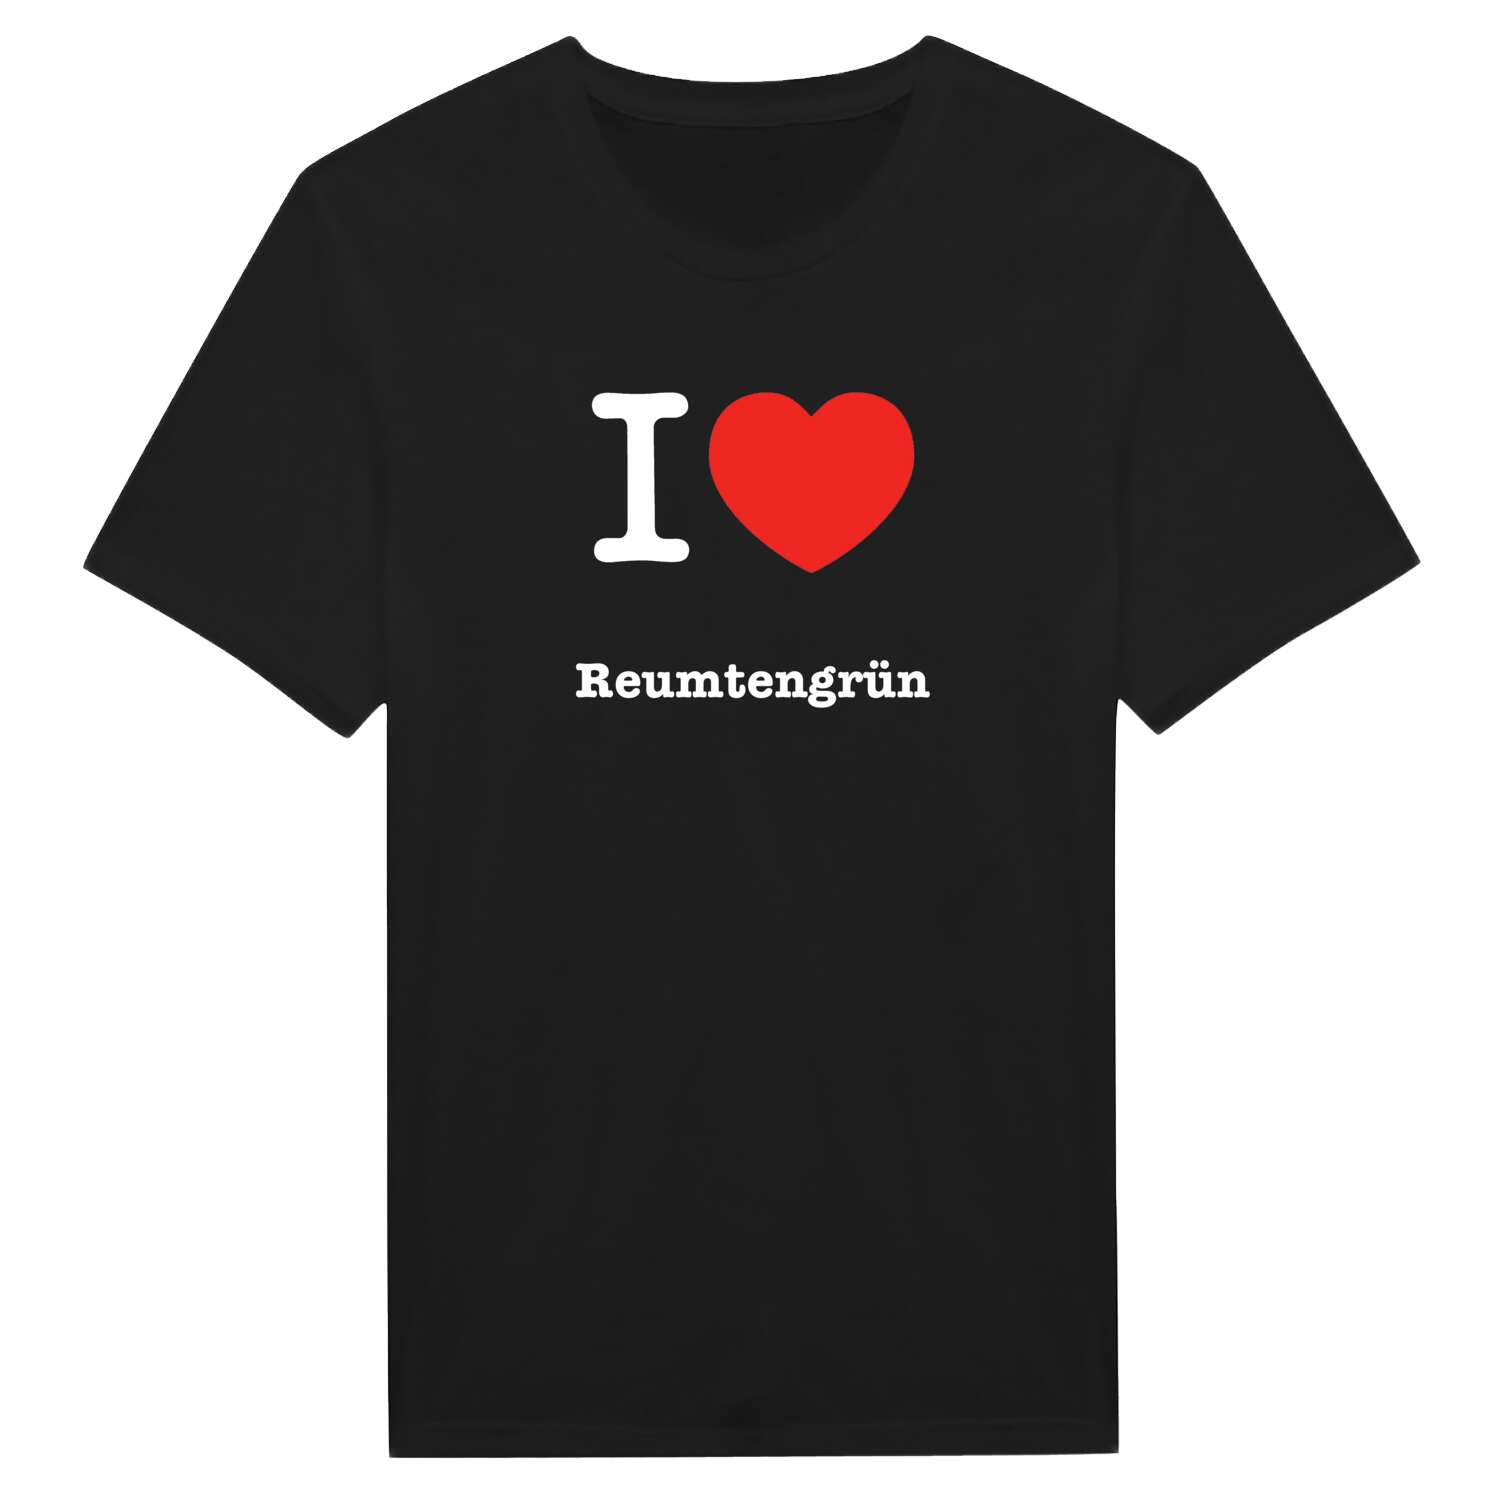 Reumtengrün T-Shirt »I love«